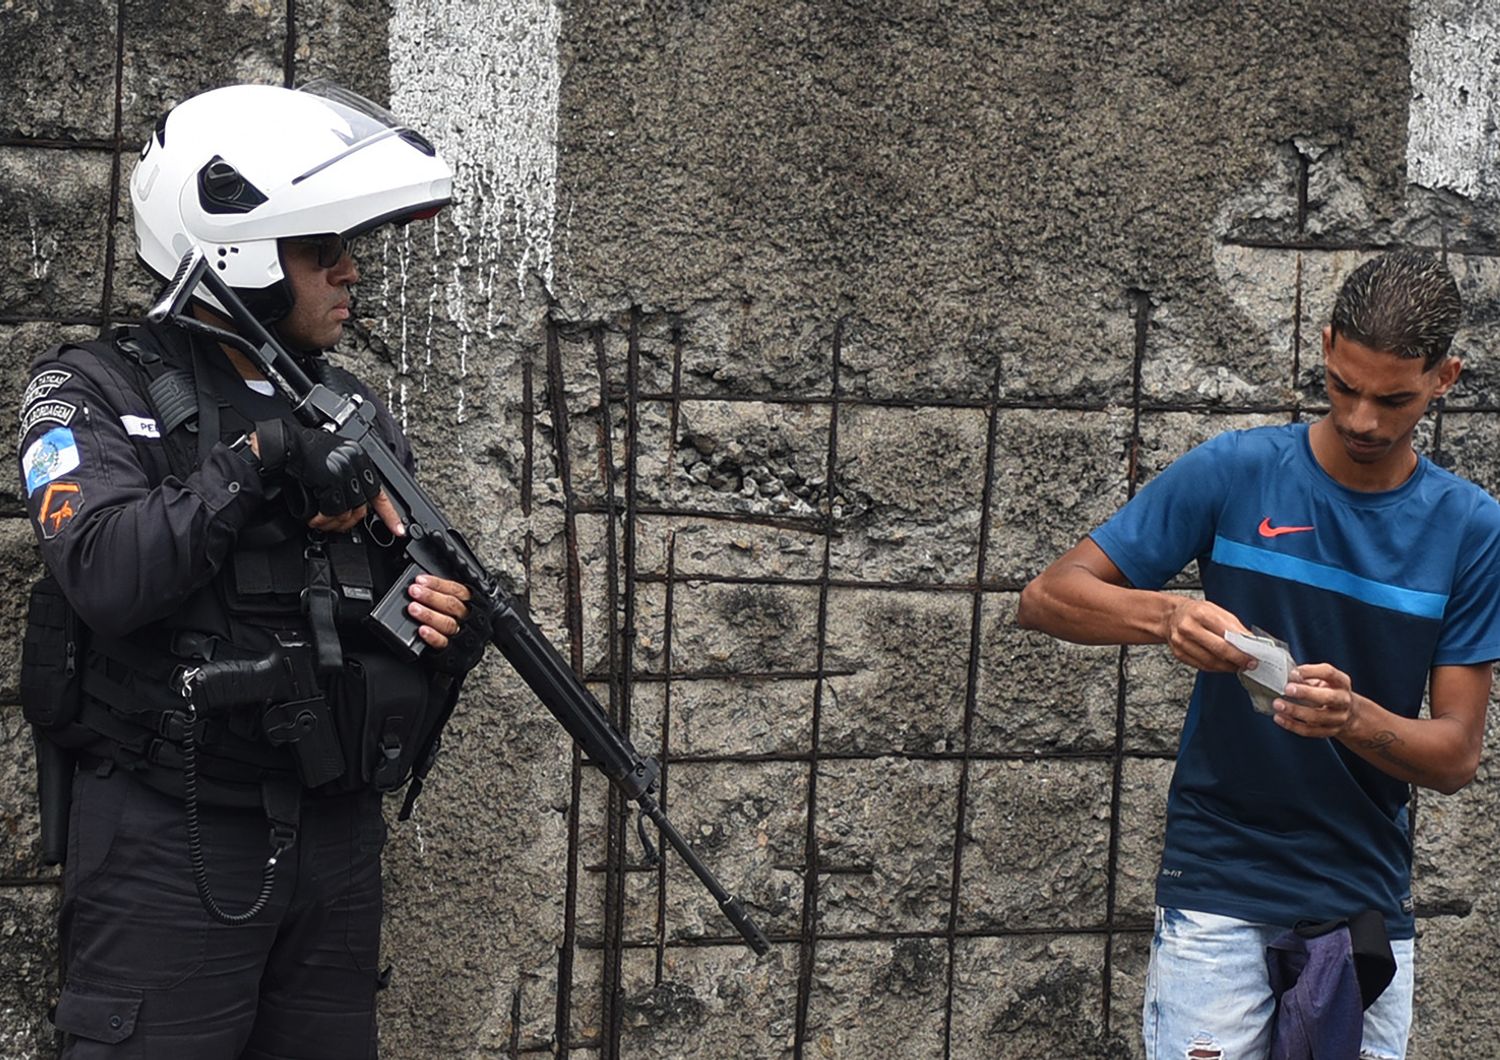 Polizia a Rio de Janeiro